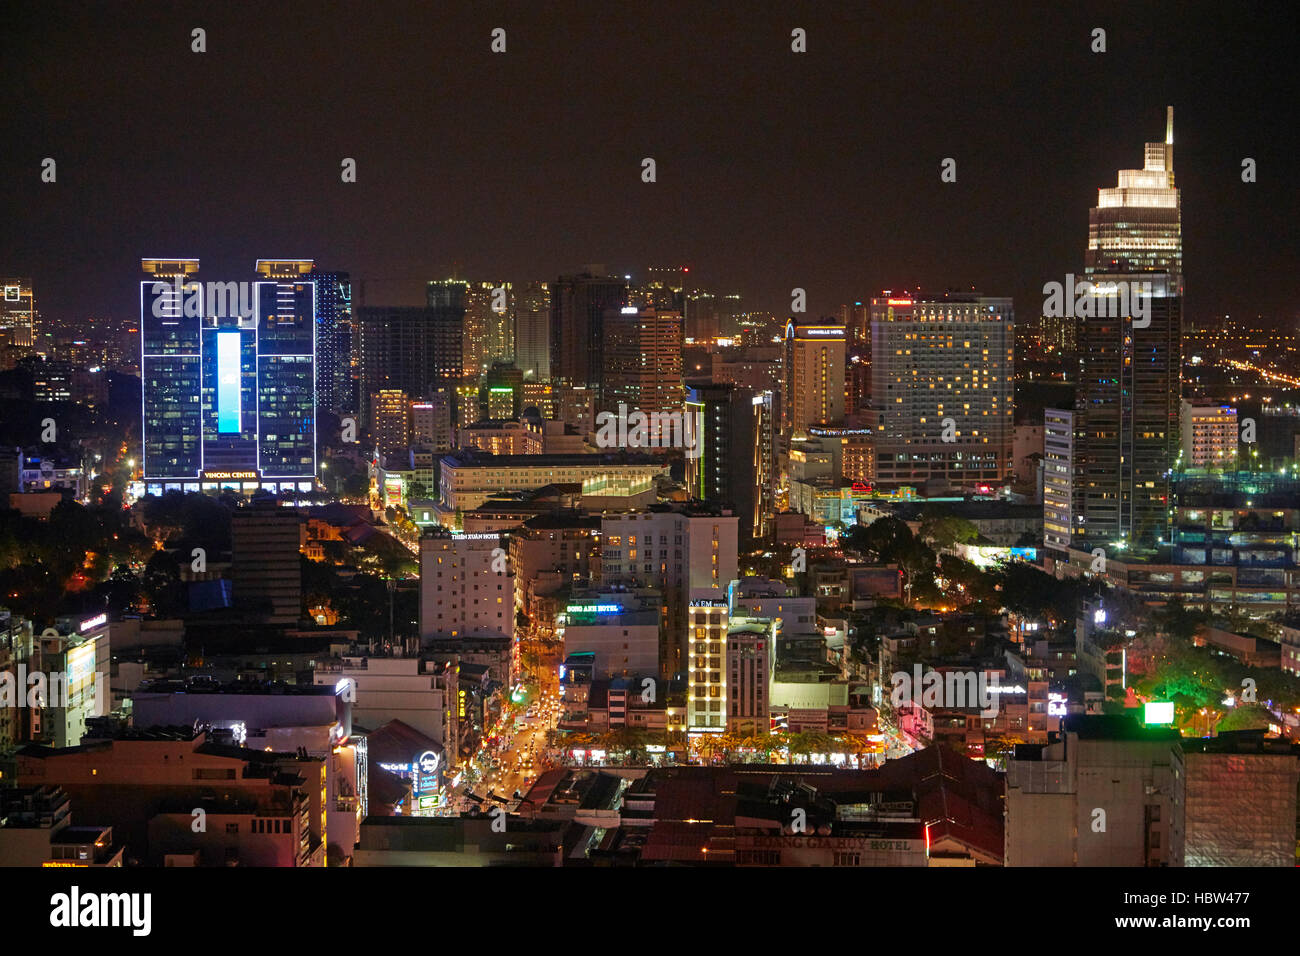 Le centre-ville de Ho Chi Minh (Saigon), Vietnam, la nuit Banque D'Images